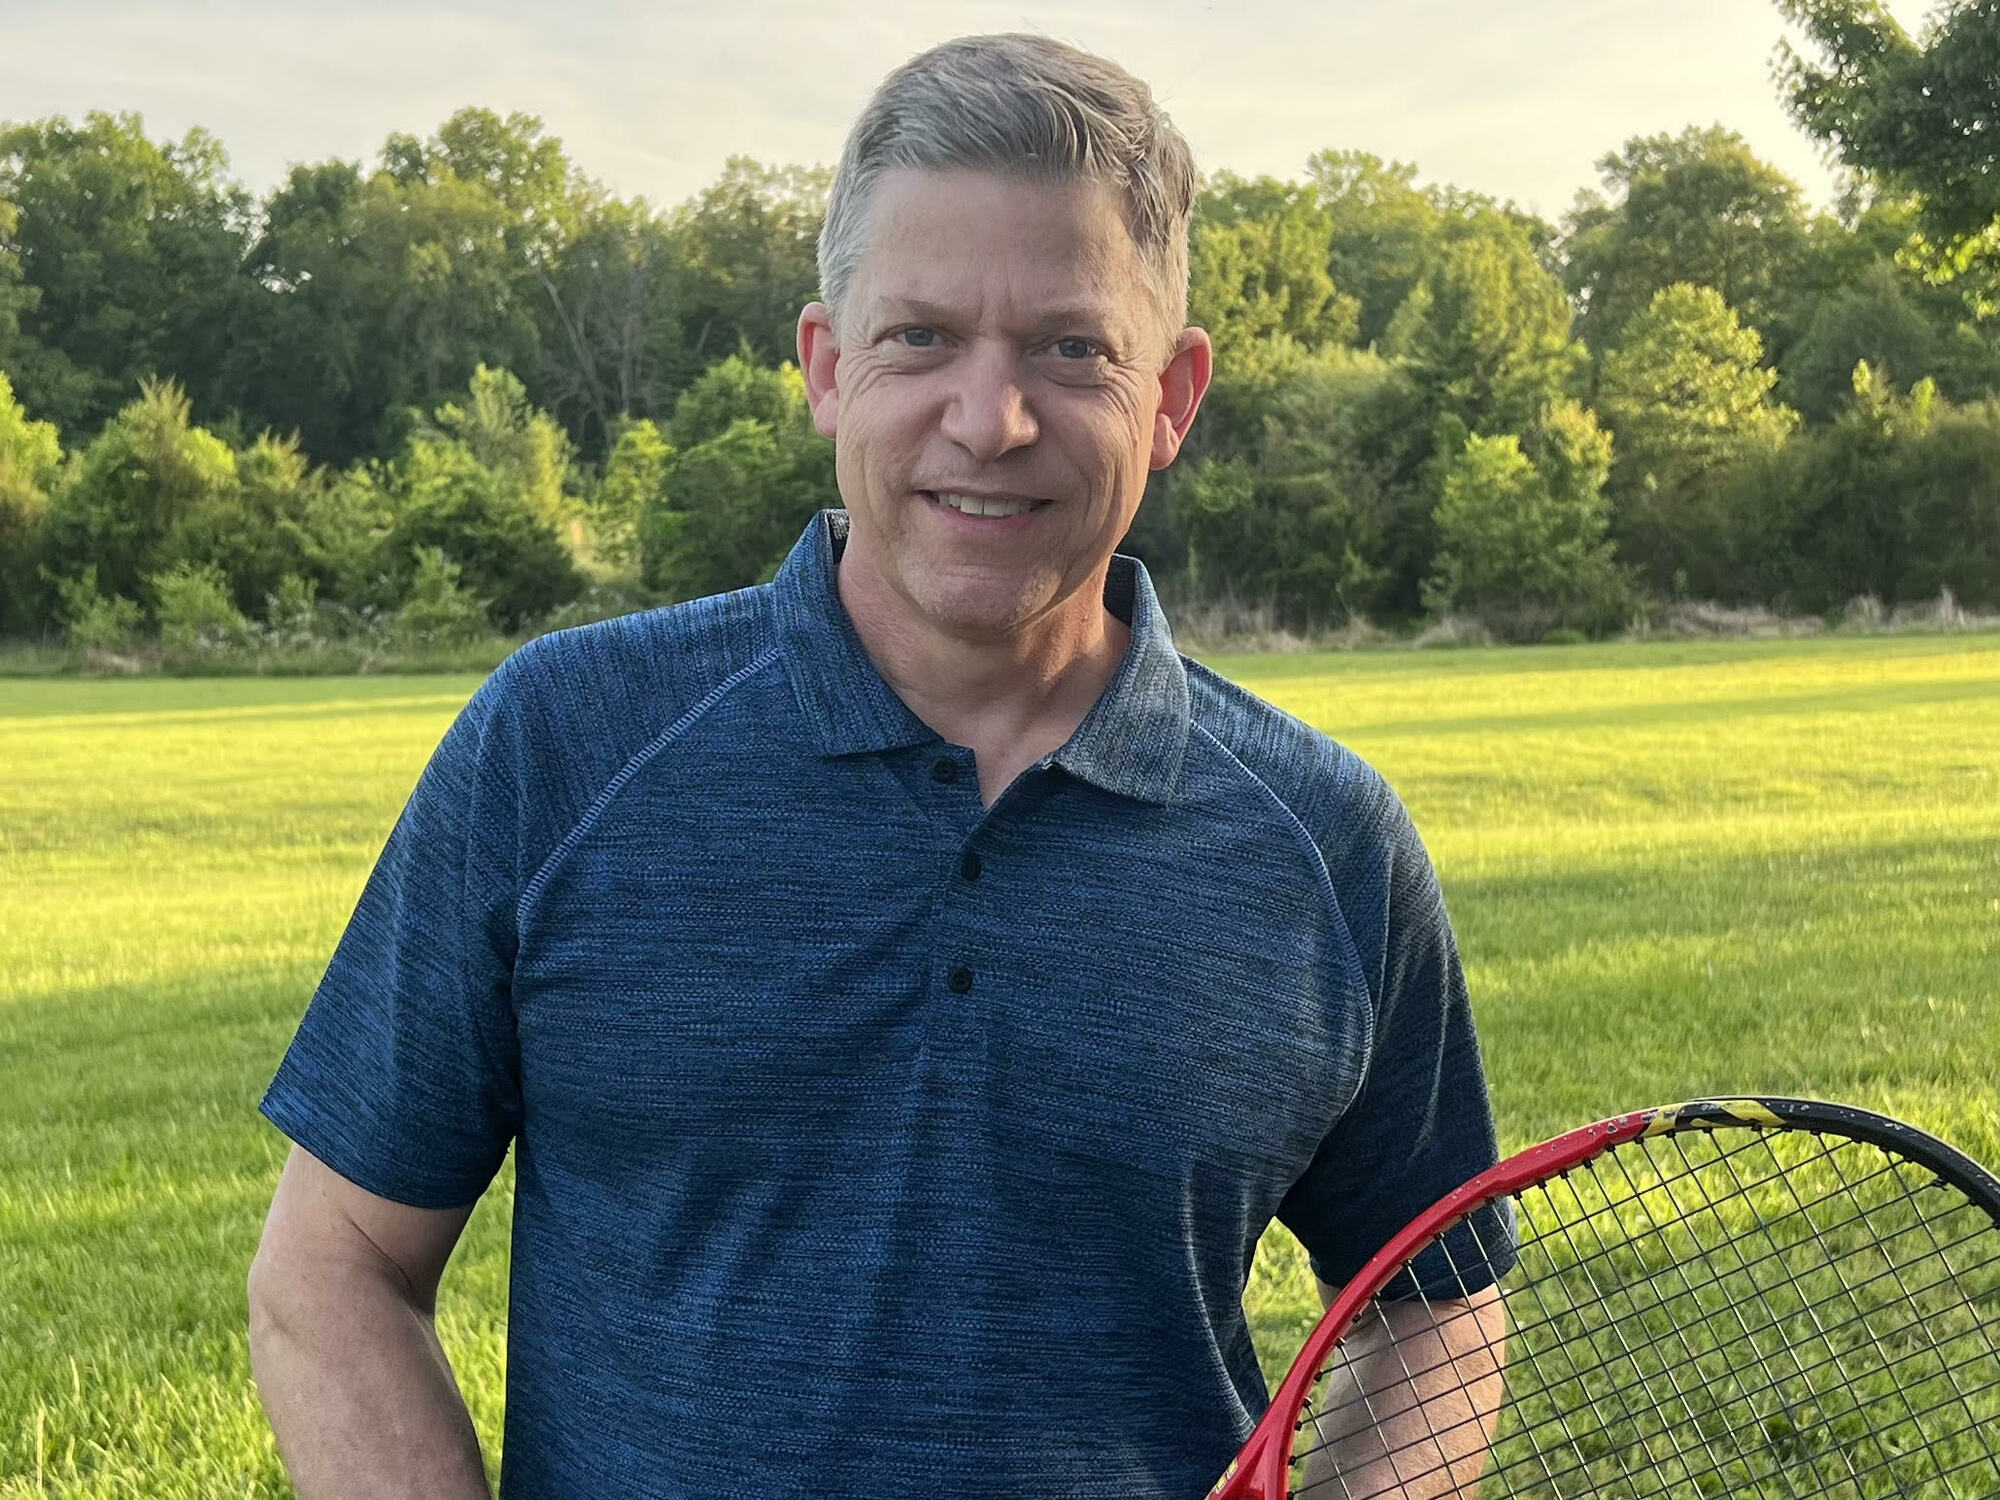 Stephen B. teaches tennis lessons in Nokesville, VA